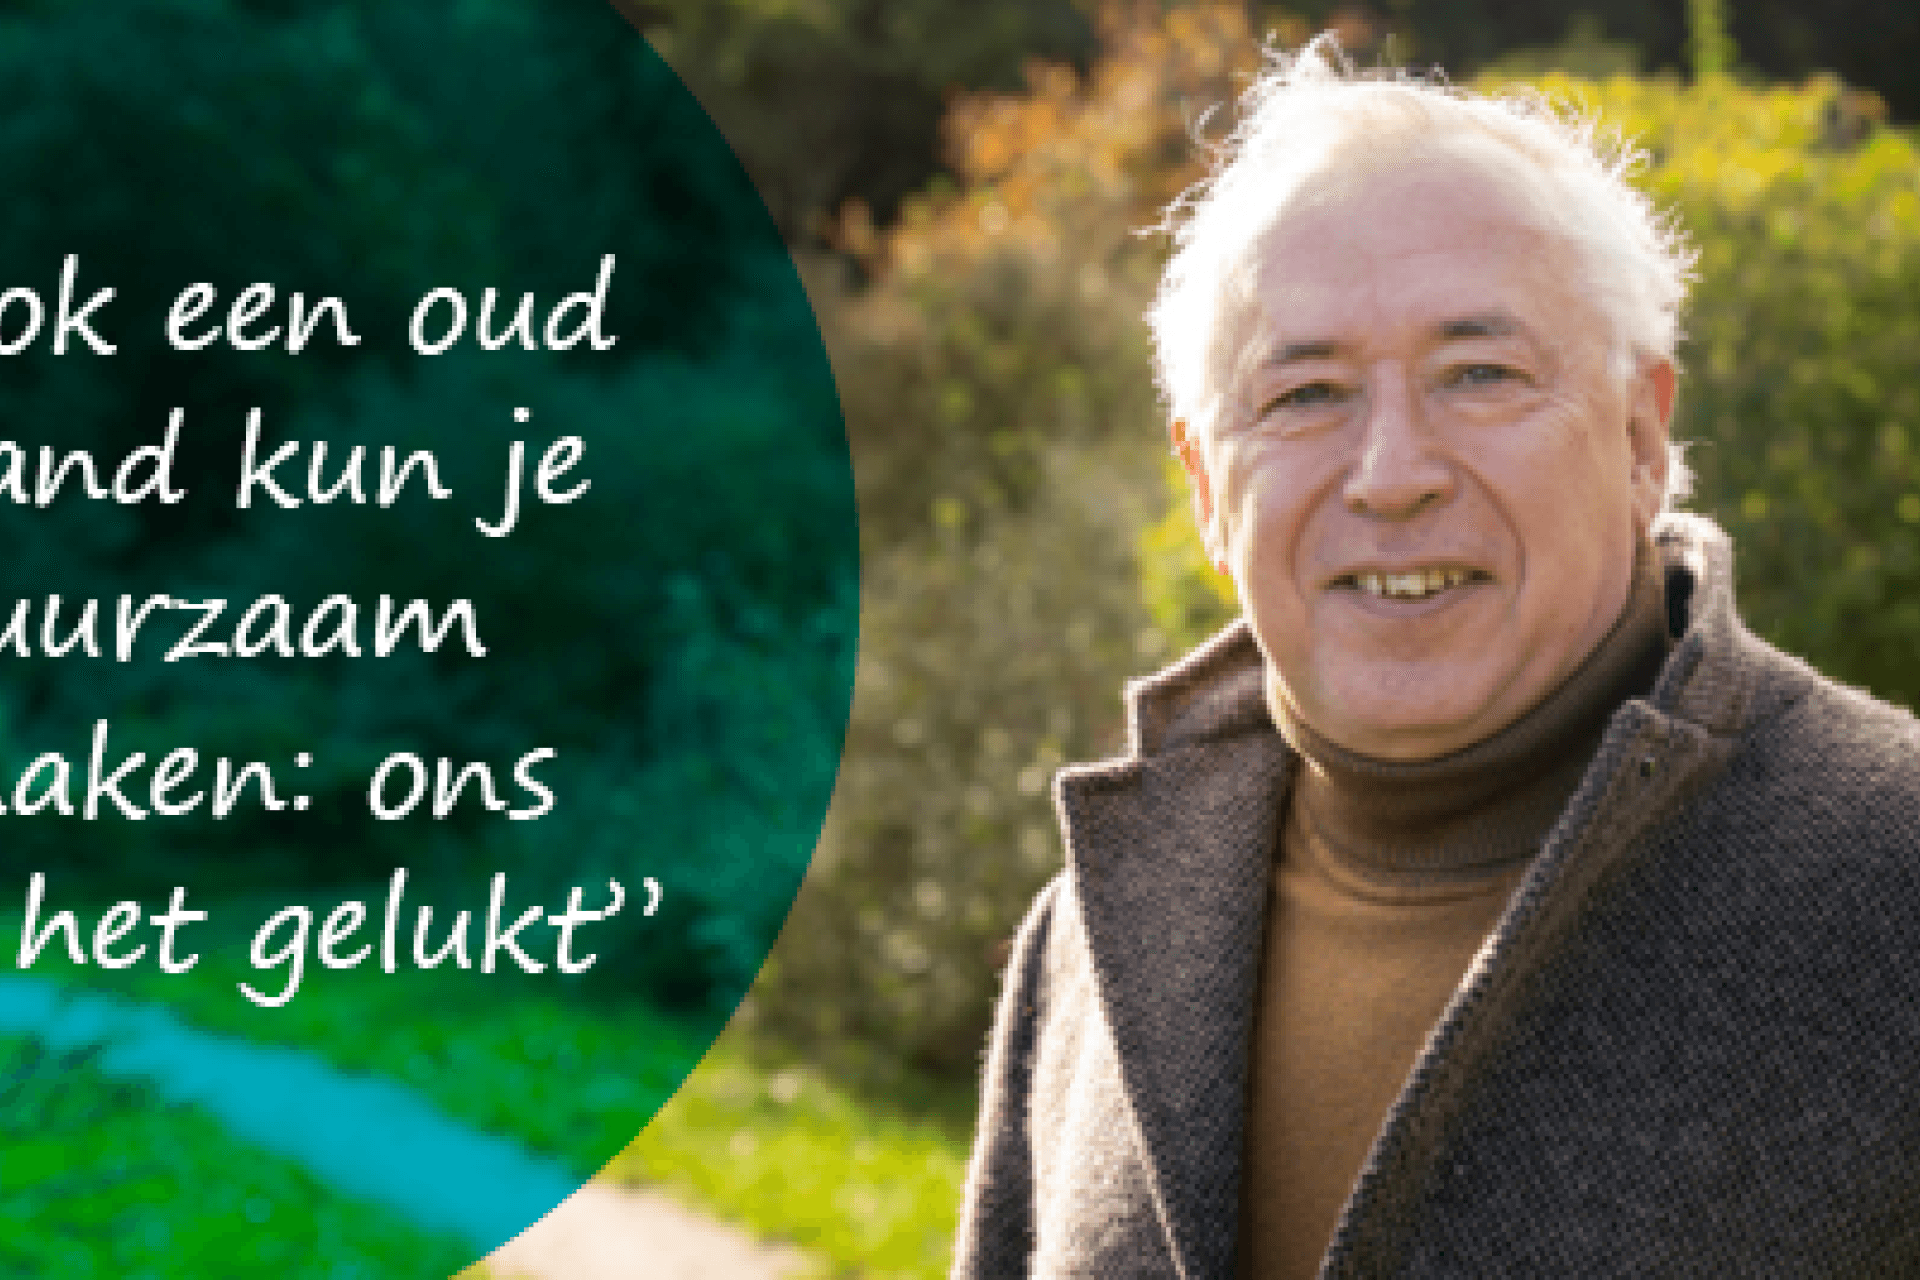 Duurzaam verhaal Willem: 'Ook een oud pand kun je duurzaam maken: ons is het gelukt'